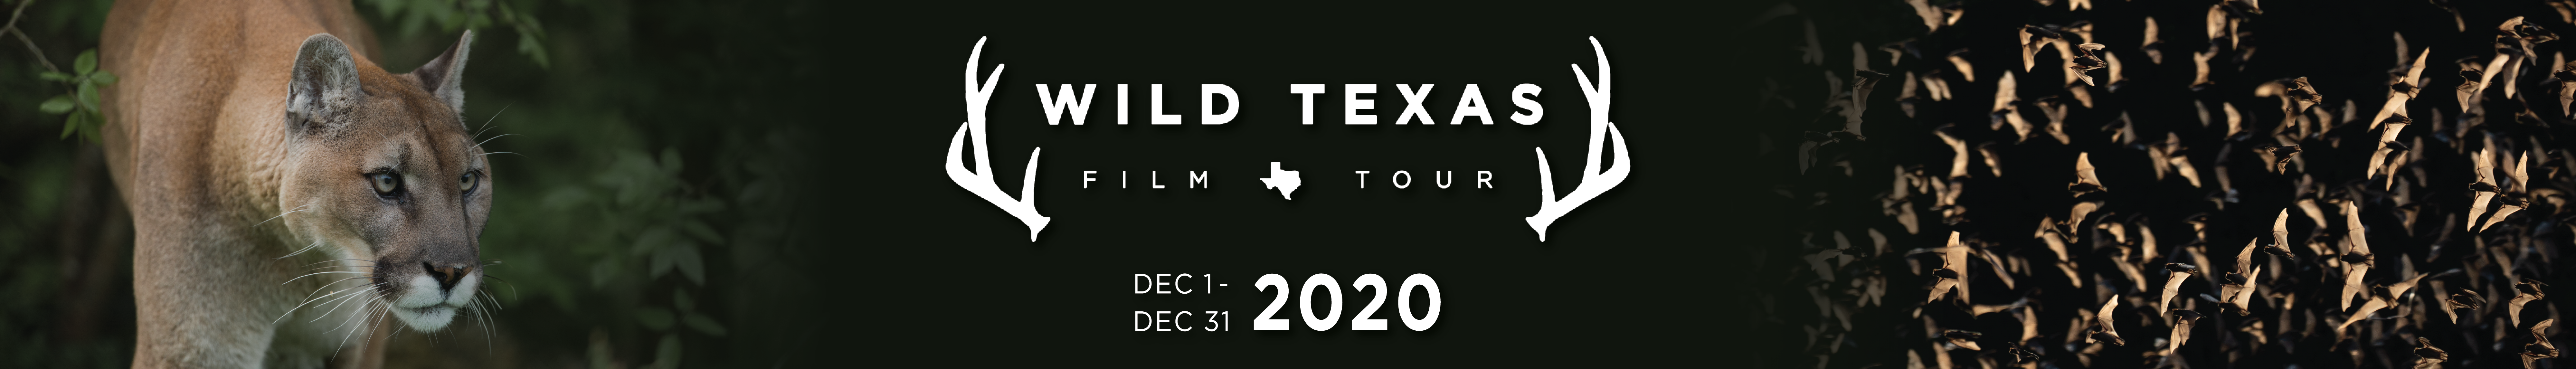 Wild Texas Film Tour